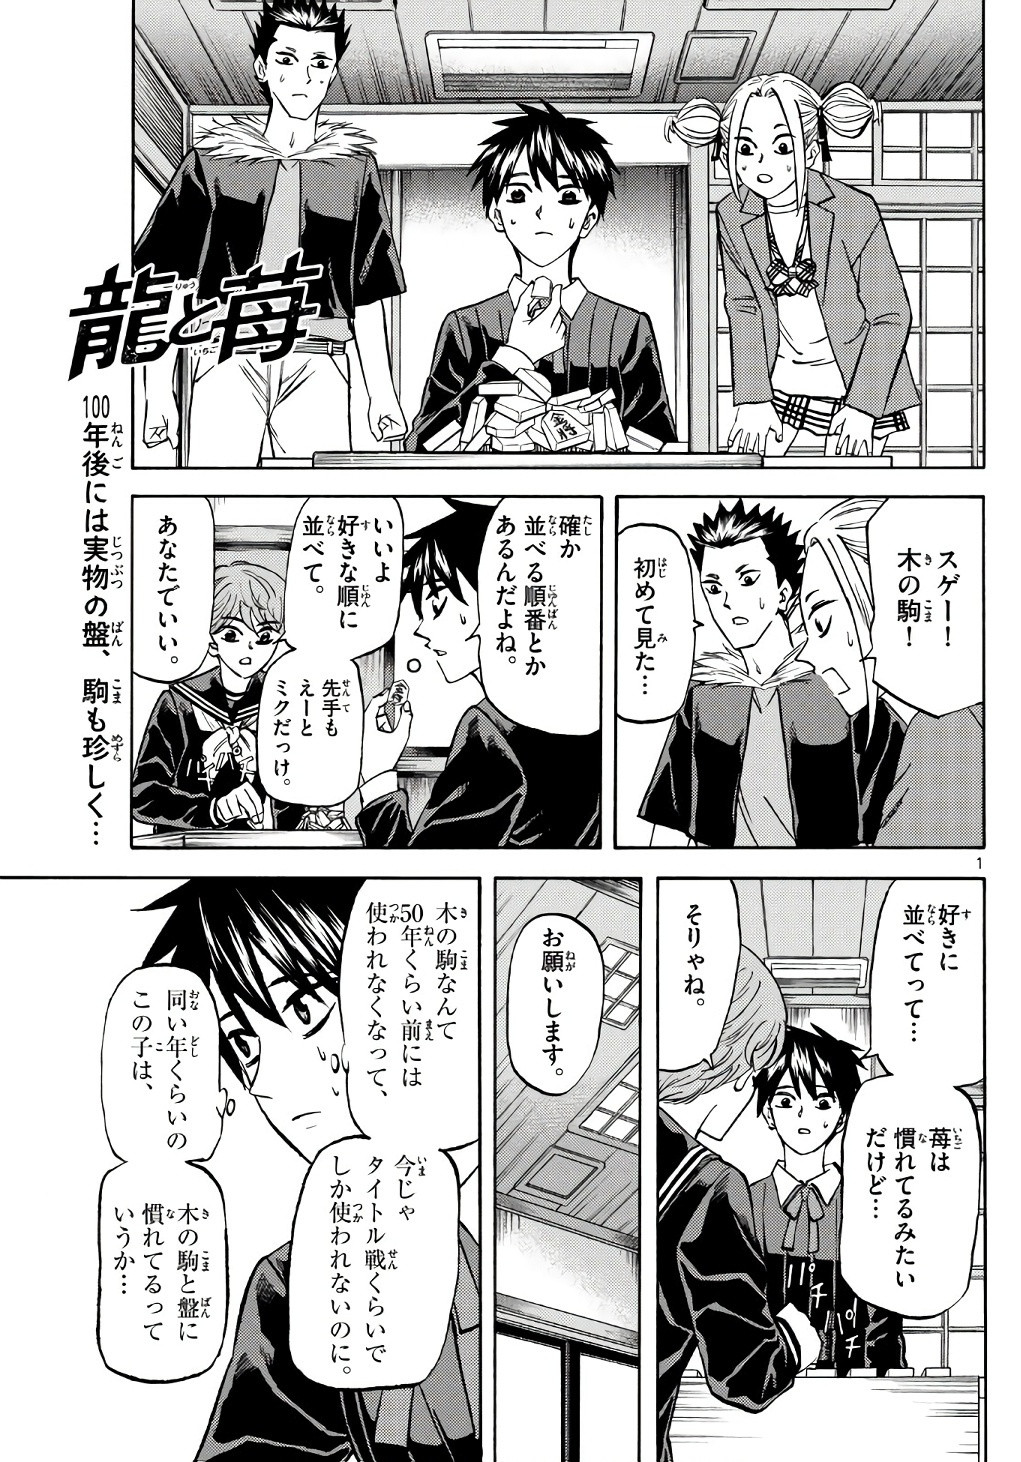 Ryu-to-Ichigo - Chapter 184 - Page 1